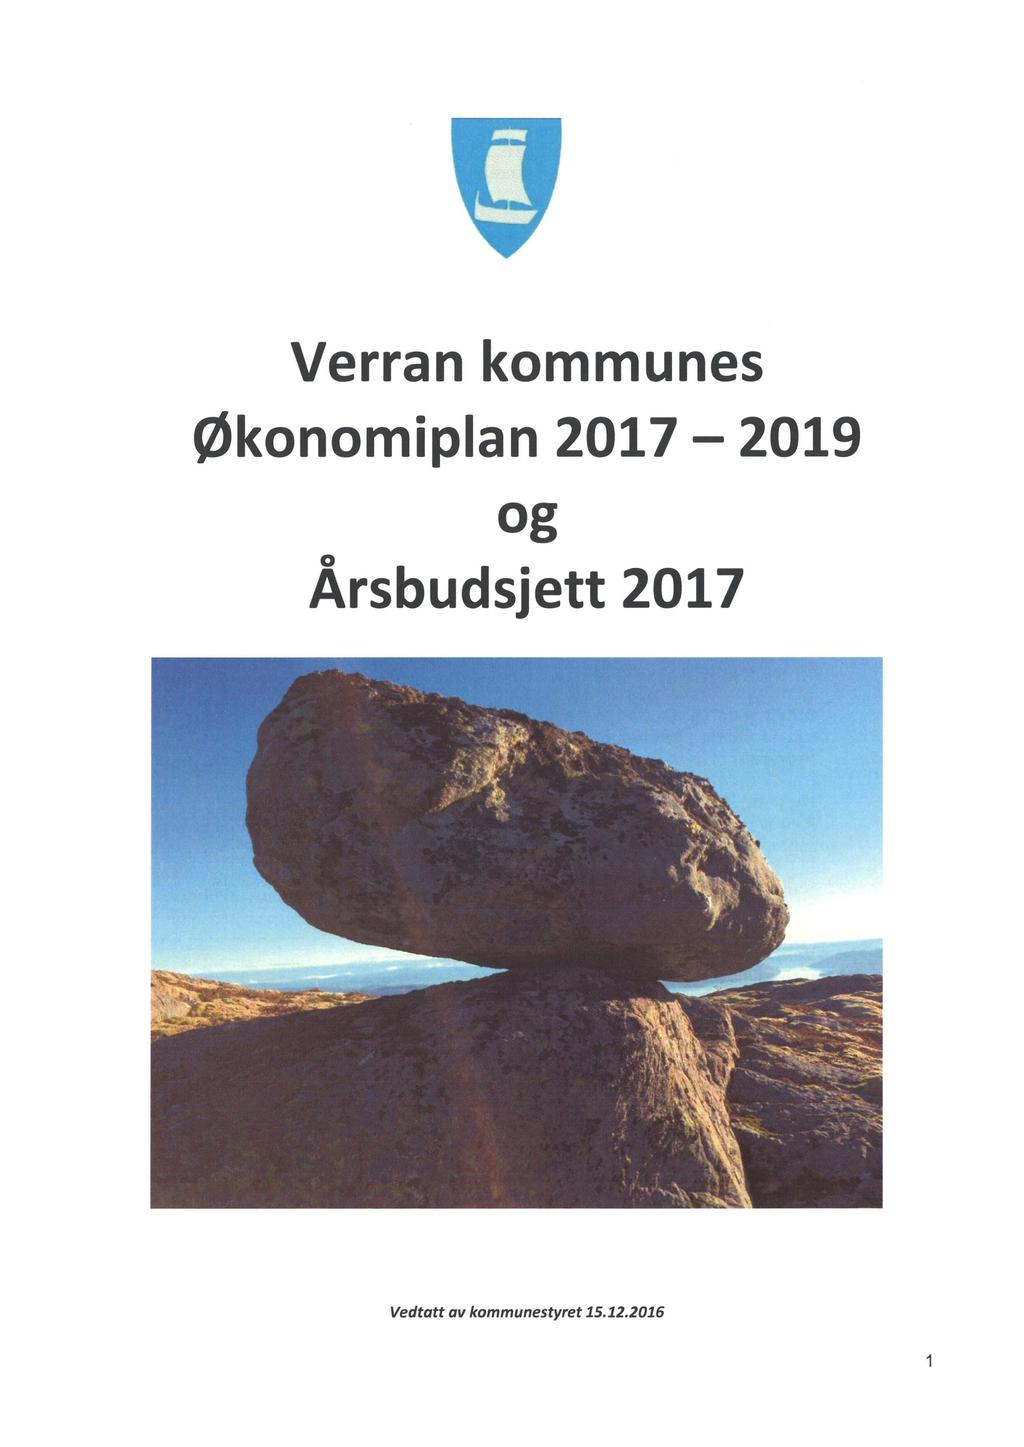 i Verran kommunes Økonomiplan 2017-2019 og